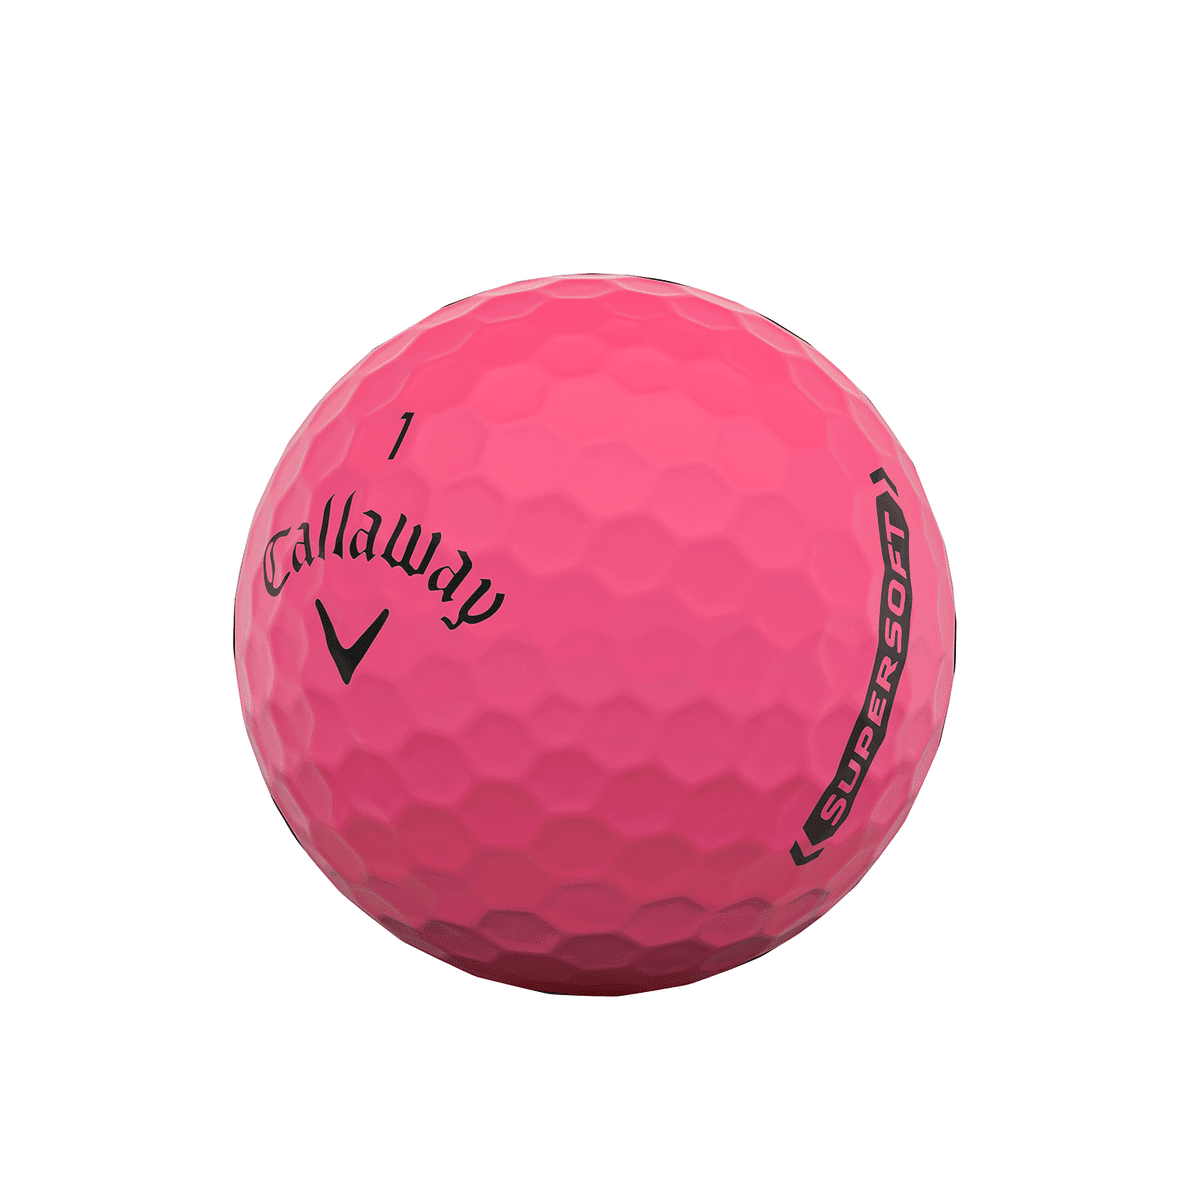 Callaway Supersoft 2021 Golf Balls, Yellow, 12 Pack - Walmart.com